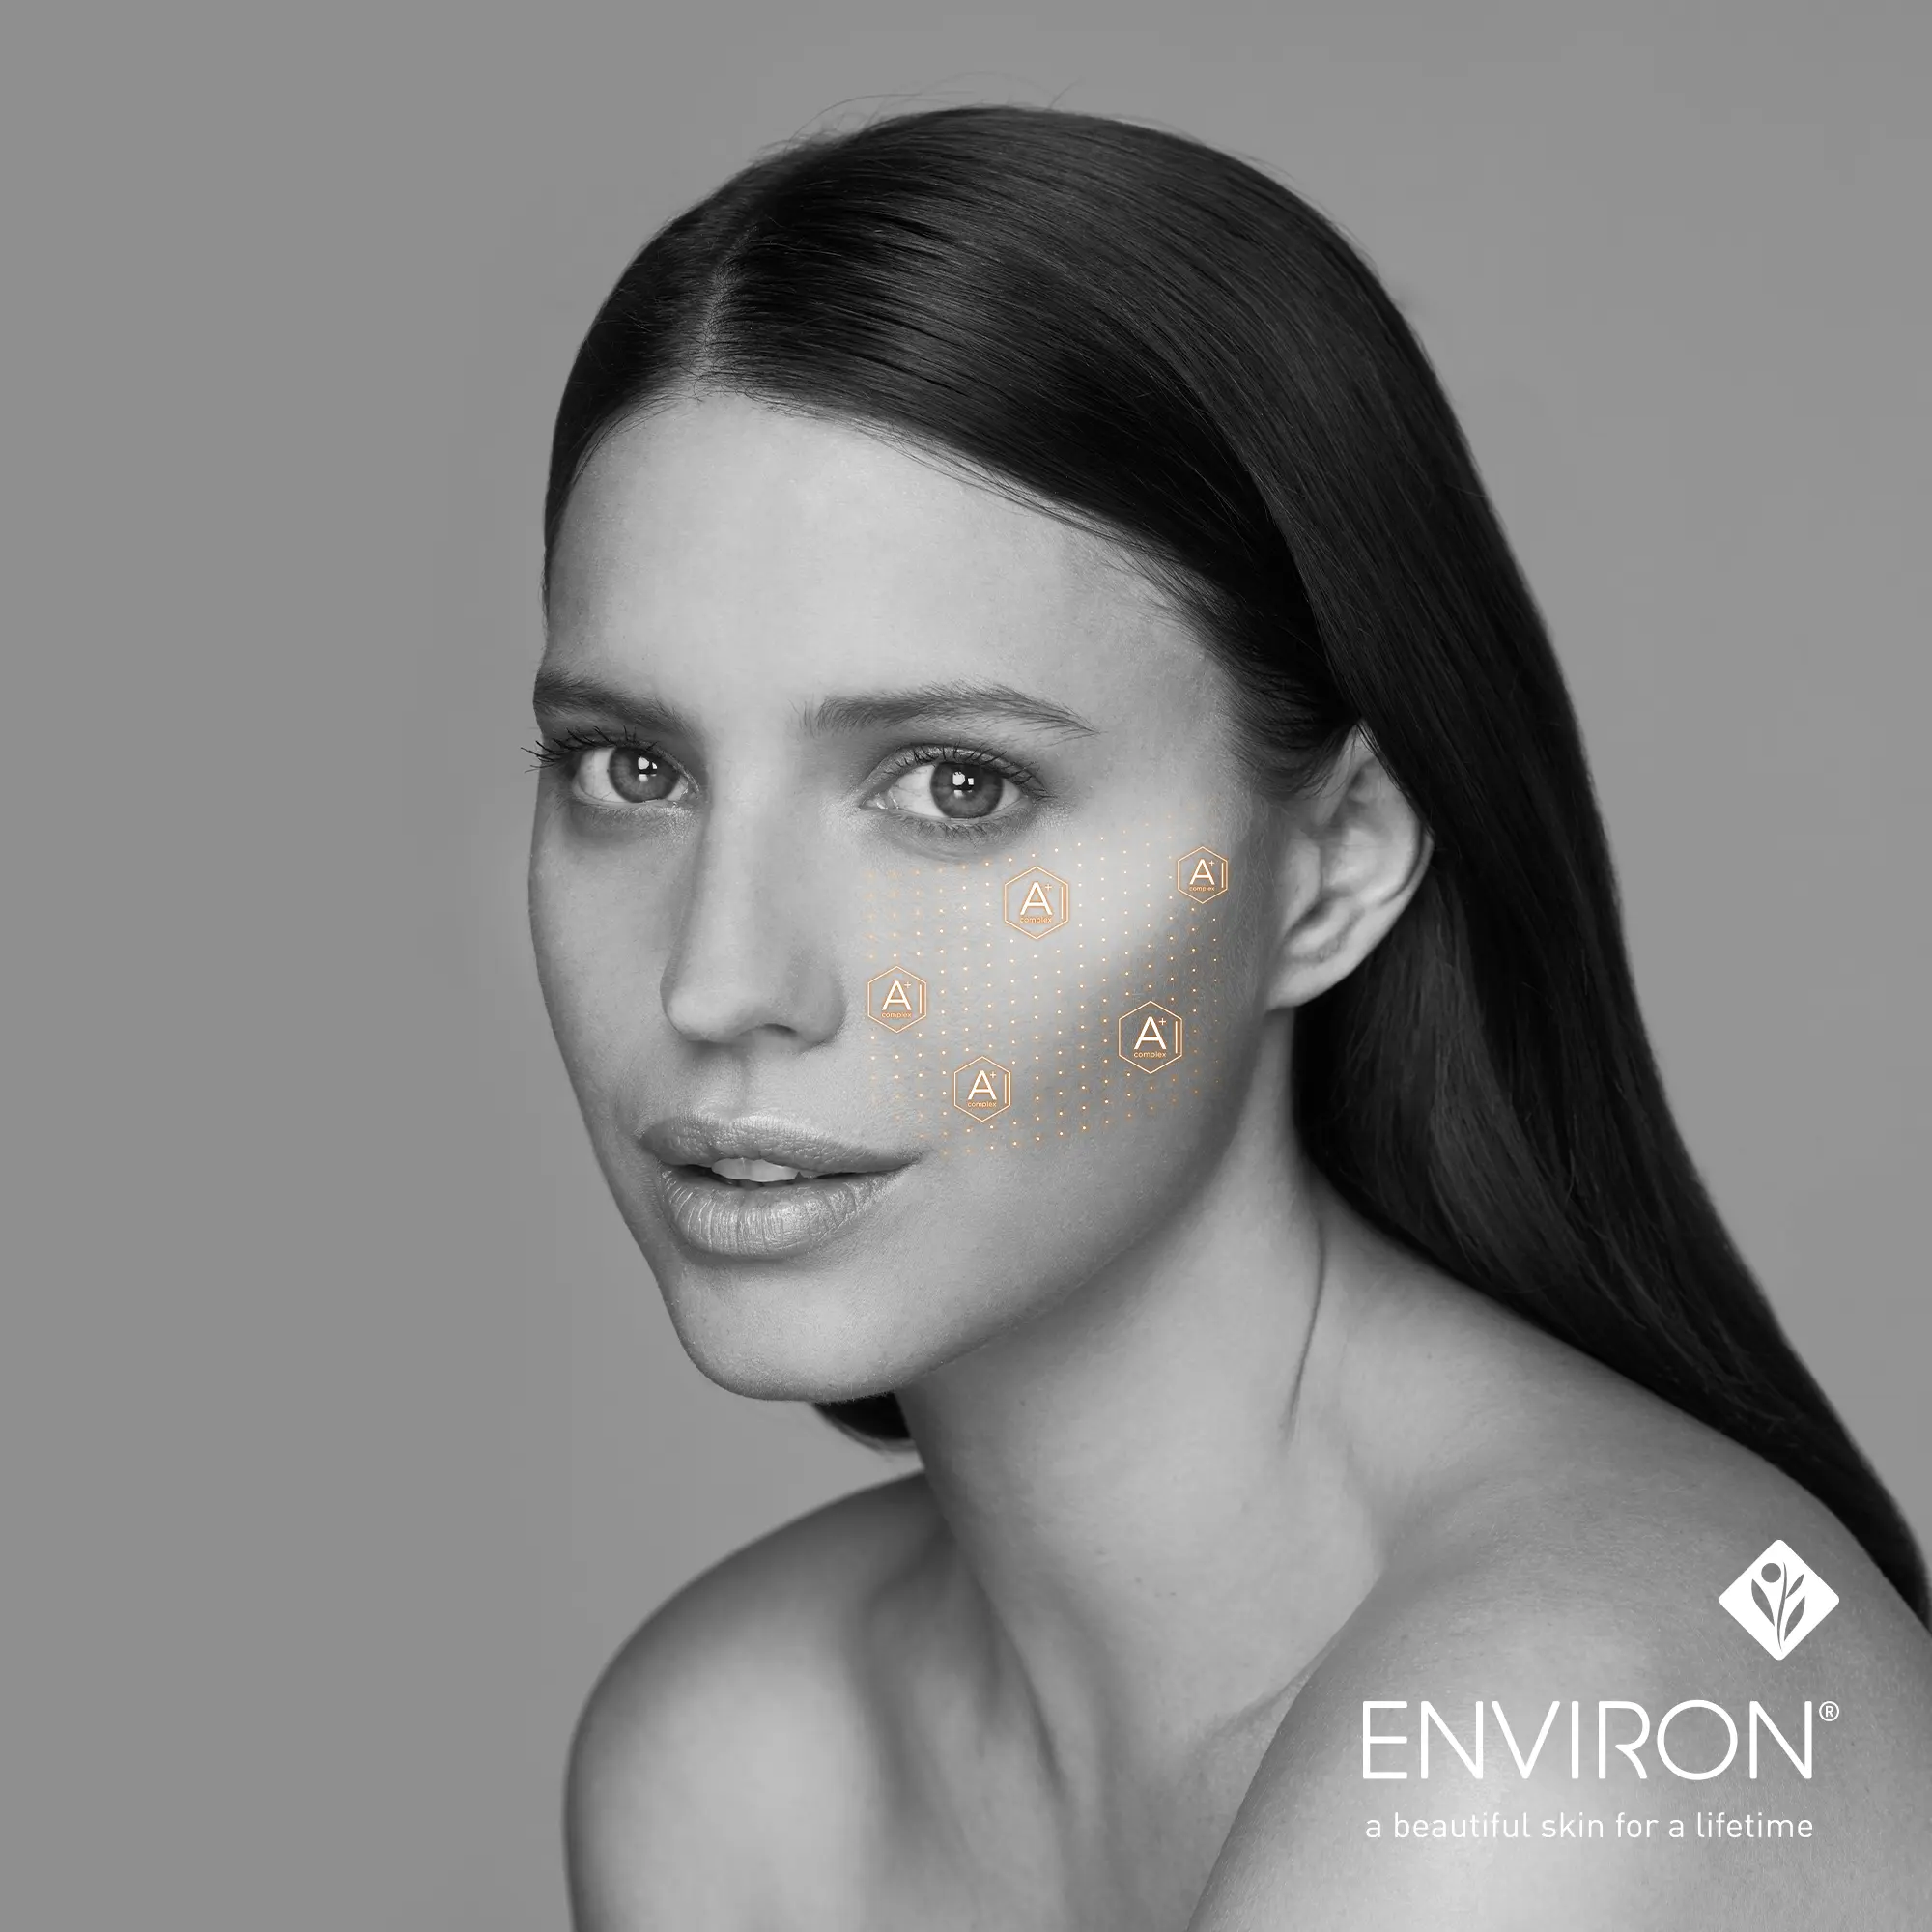 ENVIRON Skin Care